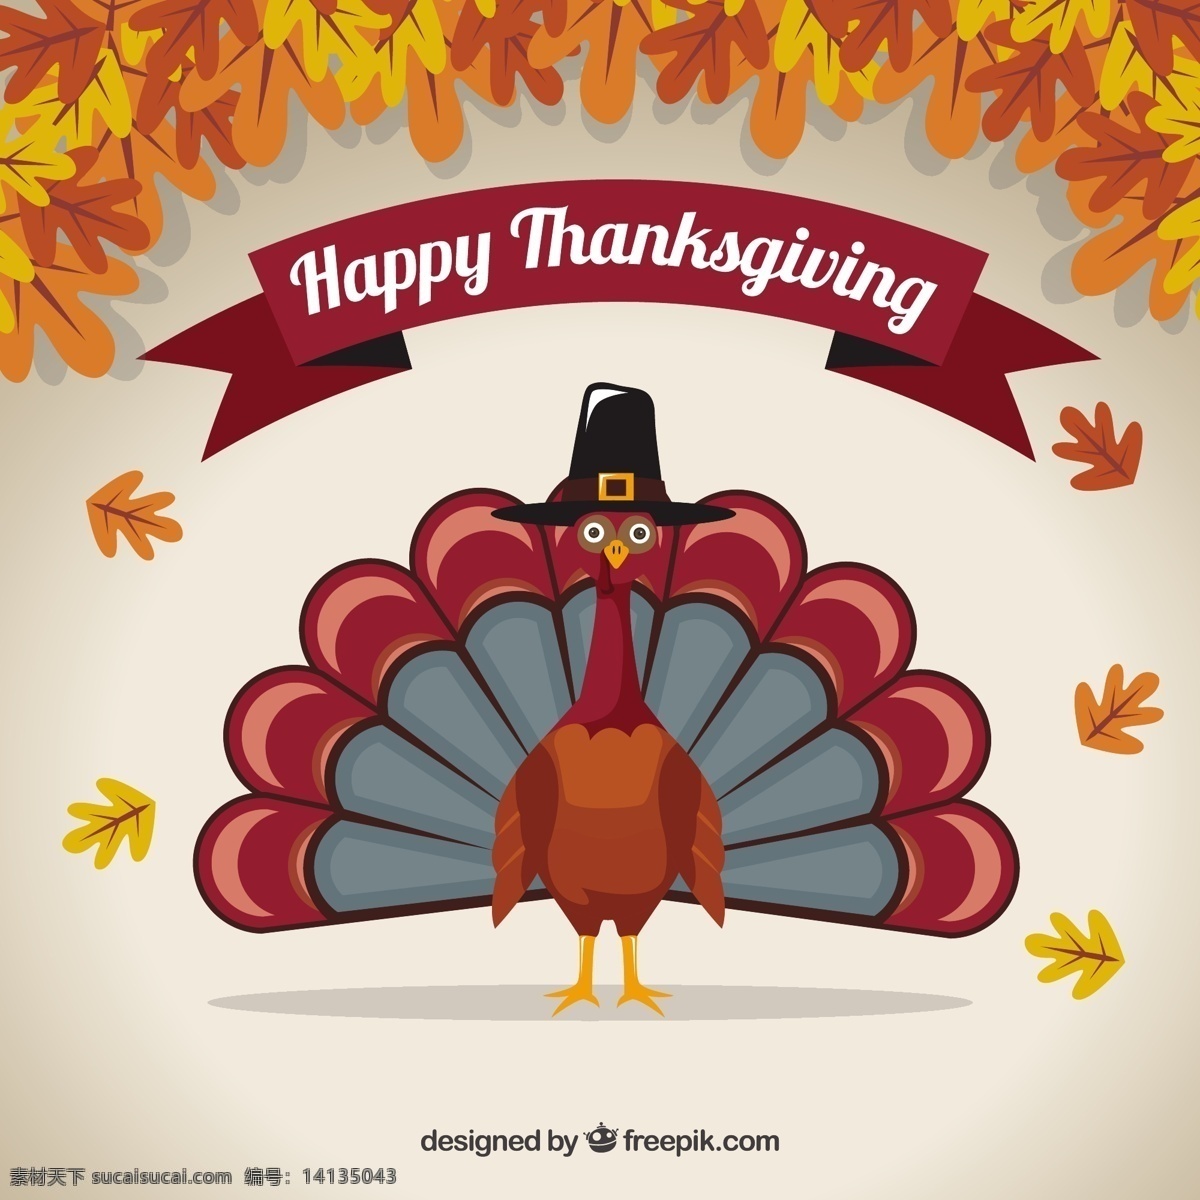 土耳其 感恩 干 树叶 背景 食物 家庭 秋天 感恩节 庆祝 帽子 节日 晚餐 火鸡 谢谢